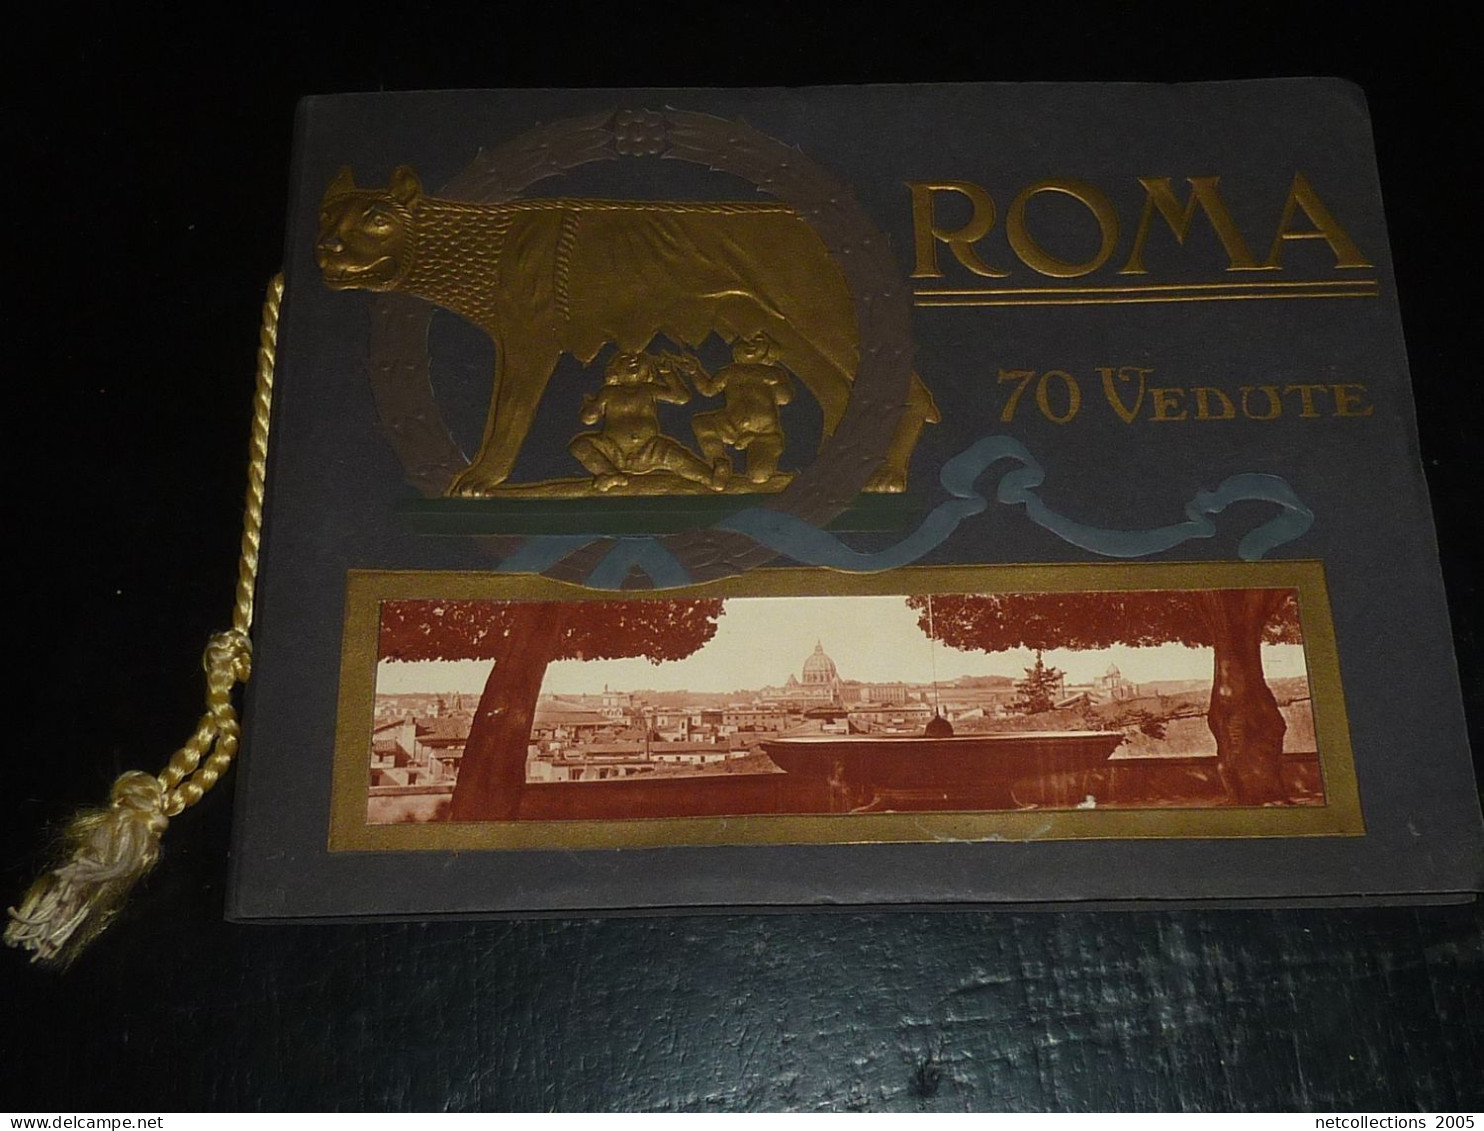 LIVRE DE 70 Vues SUR LA VILLE DE ROME " ROMA 70 VEDUTE " RICORDO DI ROMA " - ITALIE - Libri Antichi